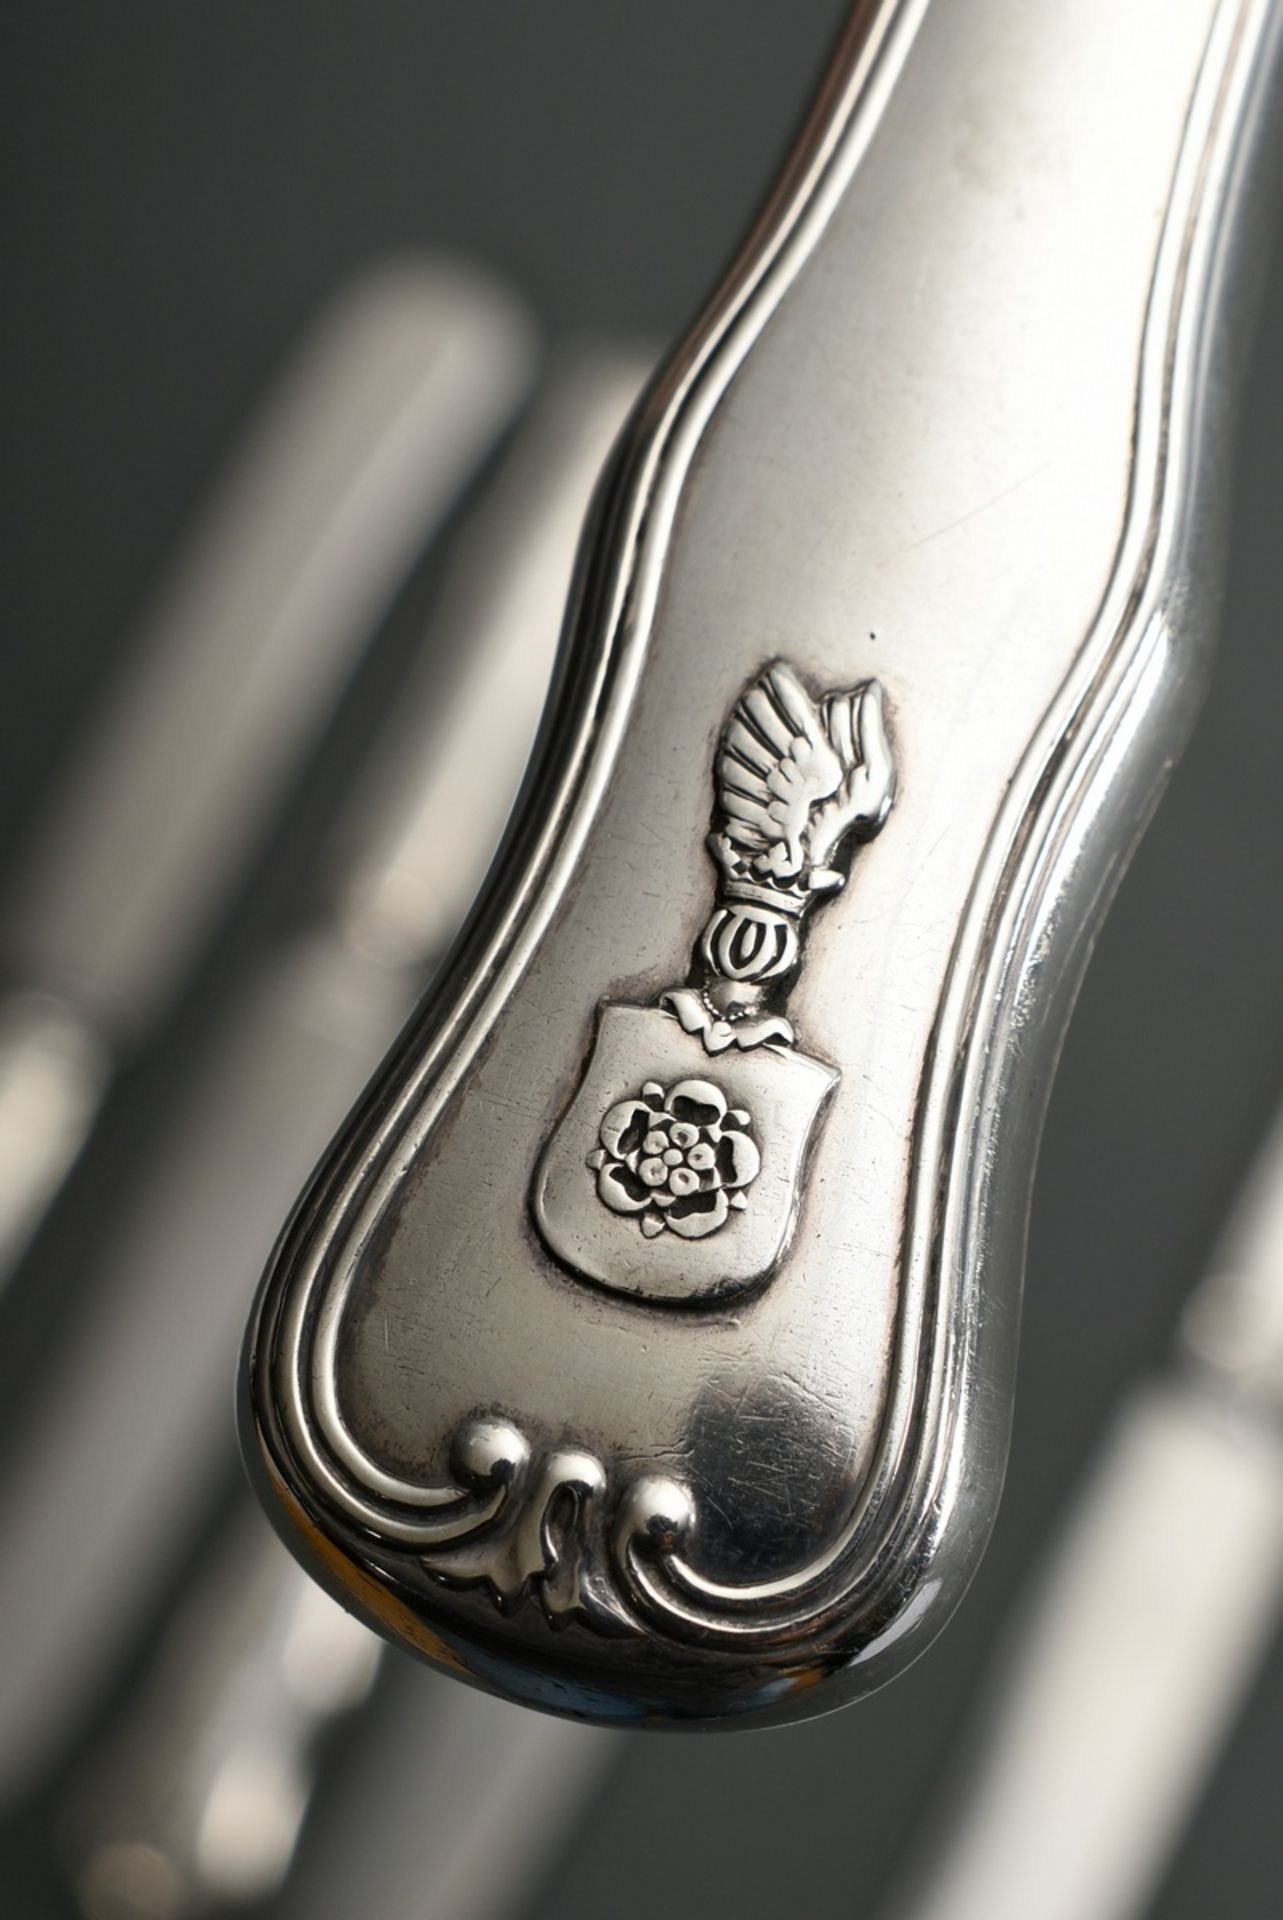 6 Große Messer mit aufgelegtem Wappen "Rose unter geflügeltem Helm" und Monogramm "EJ" unter Krone, - Bild 3 aus 6